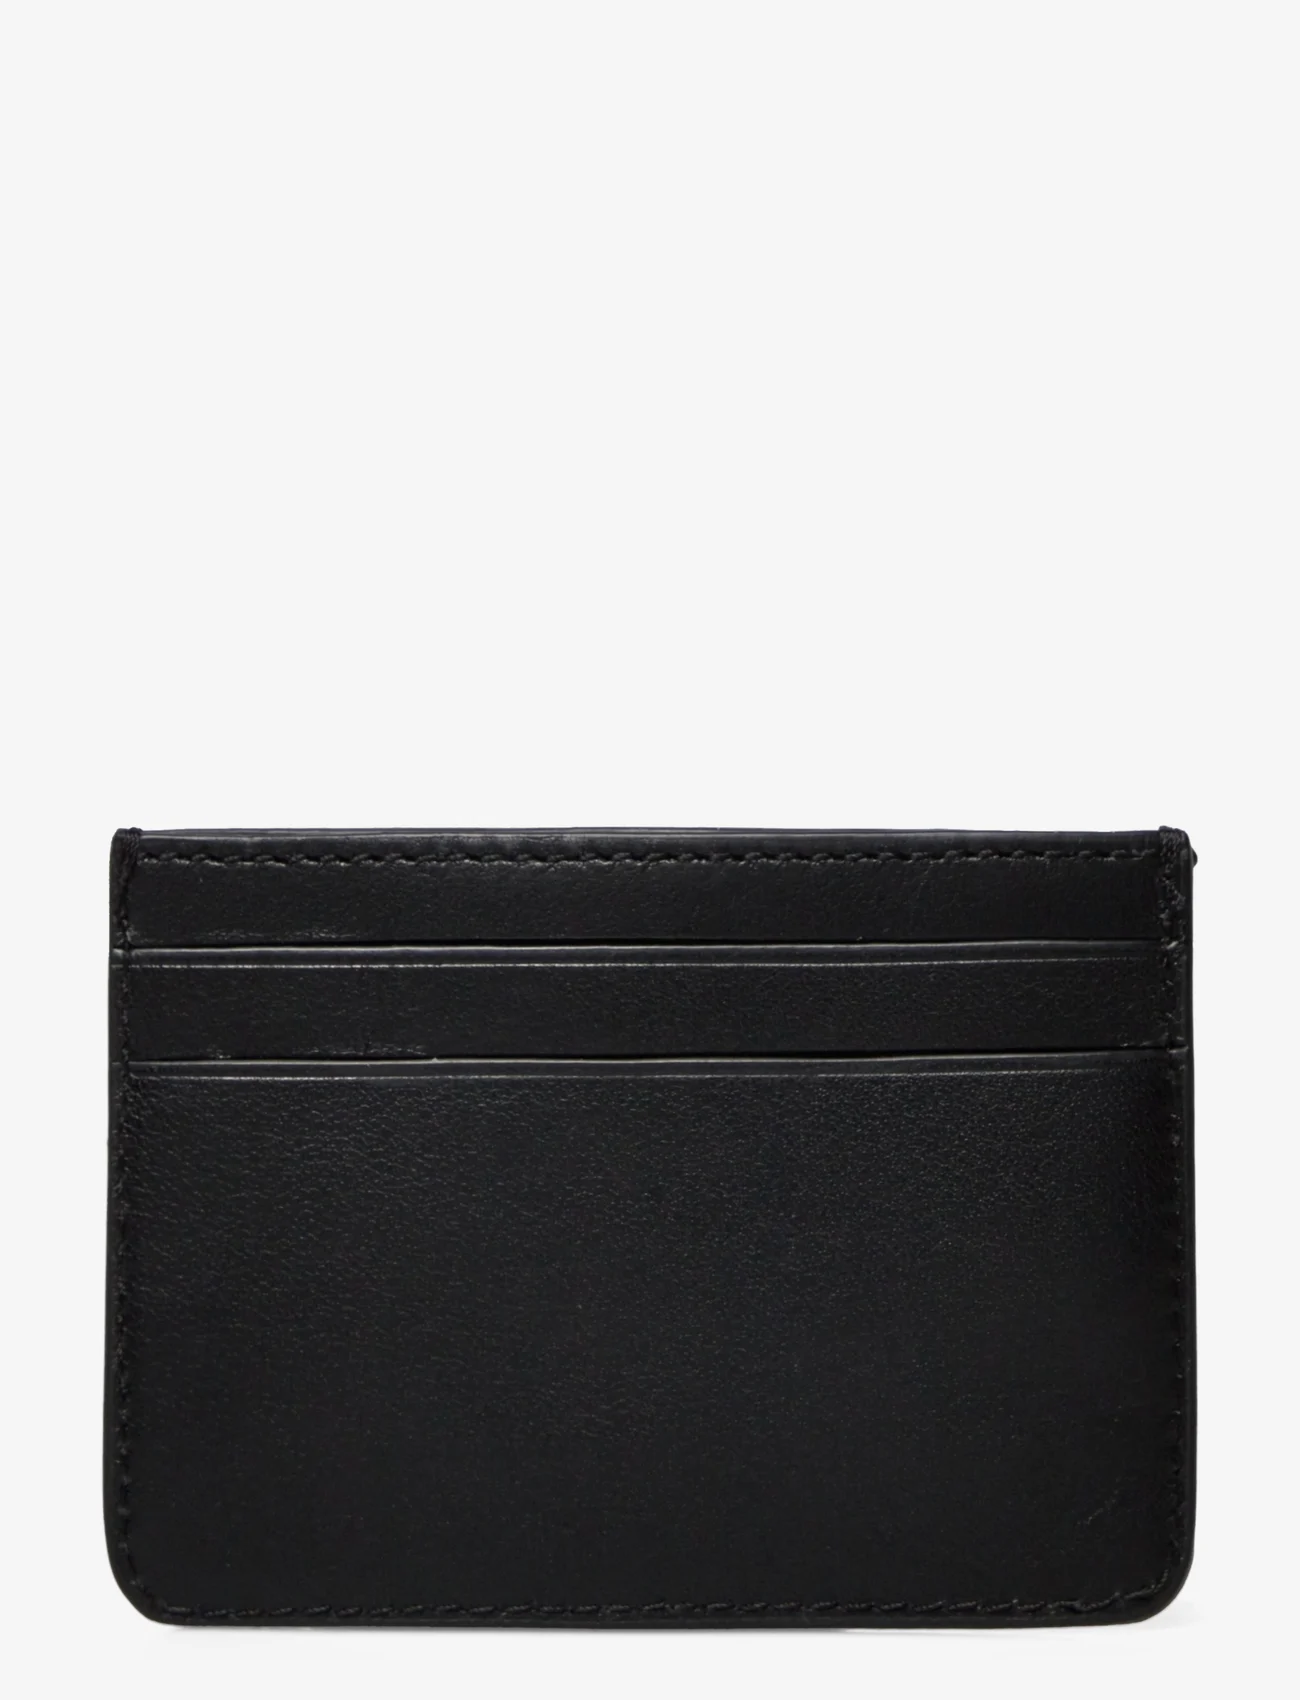 Lauren Ralph Lauren - Leather Card Case - kortelių dėklai - black - 1